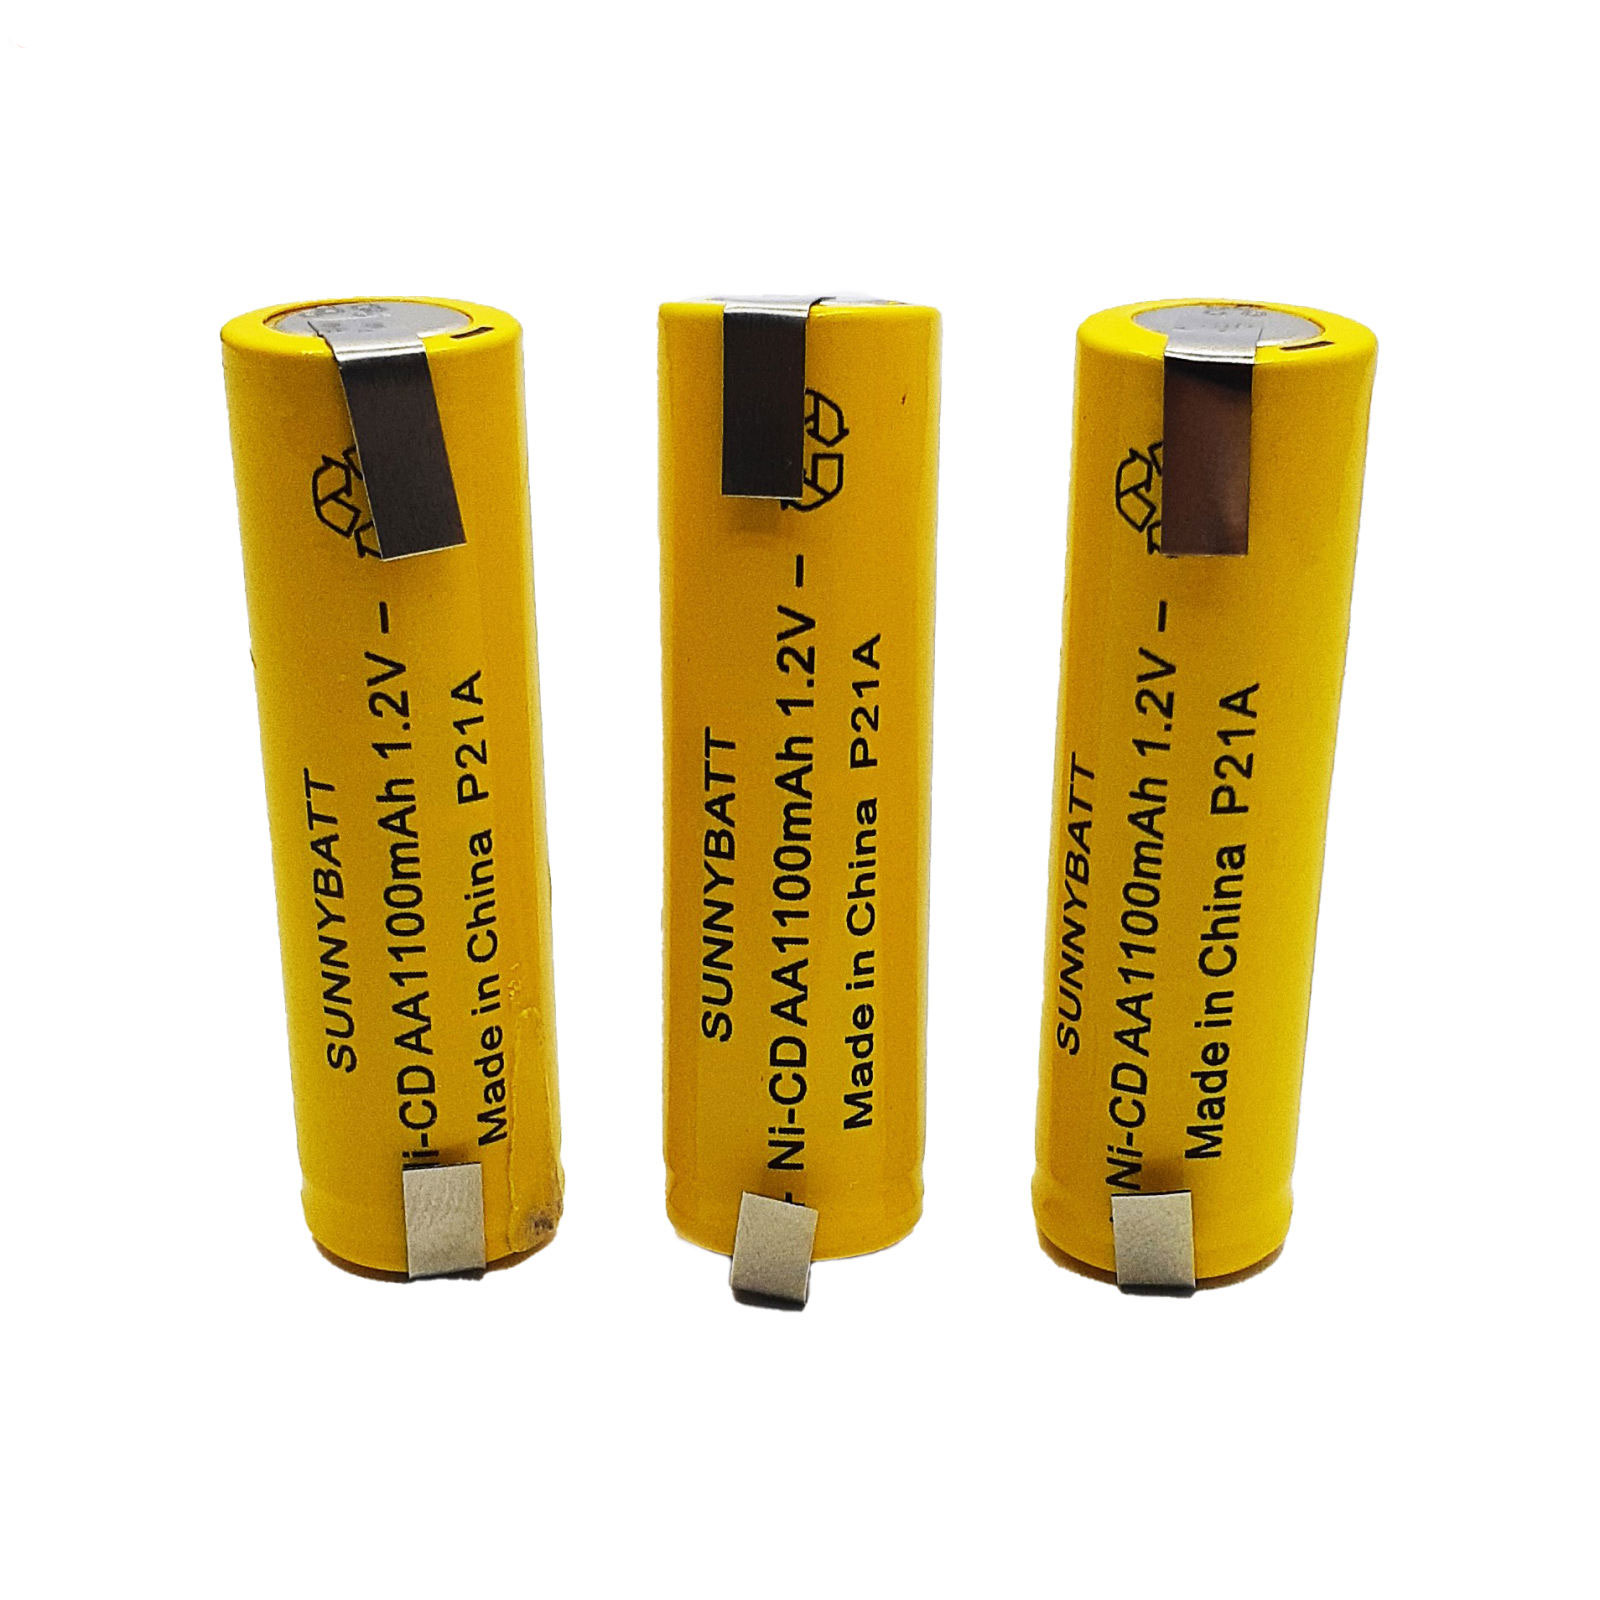 باتری قلمی قابل شارژ سانی بت مدل SB-1100 بسته 3 عددی 